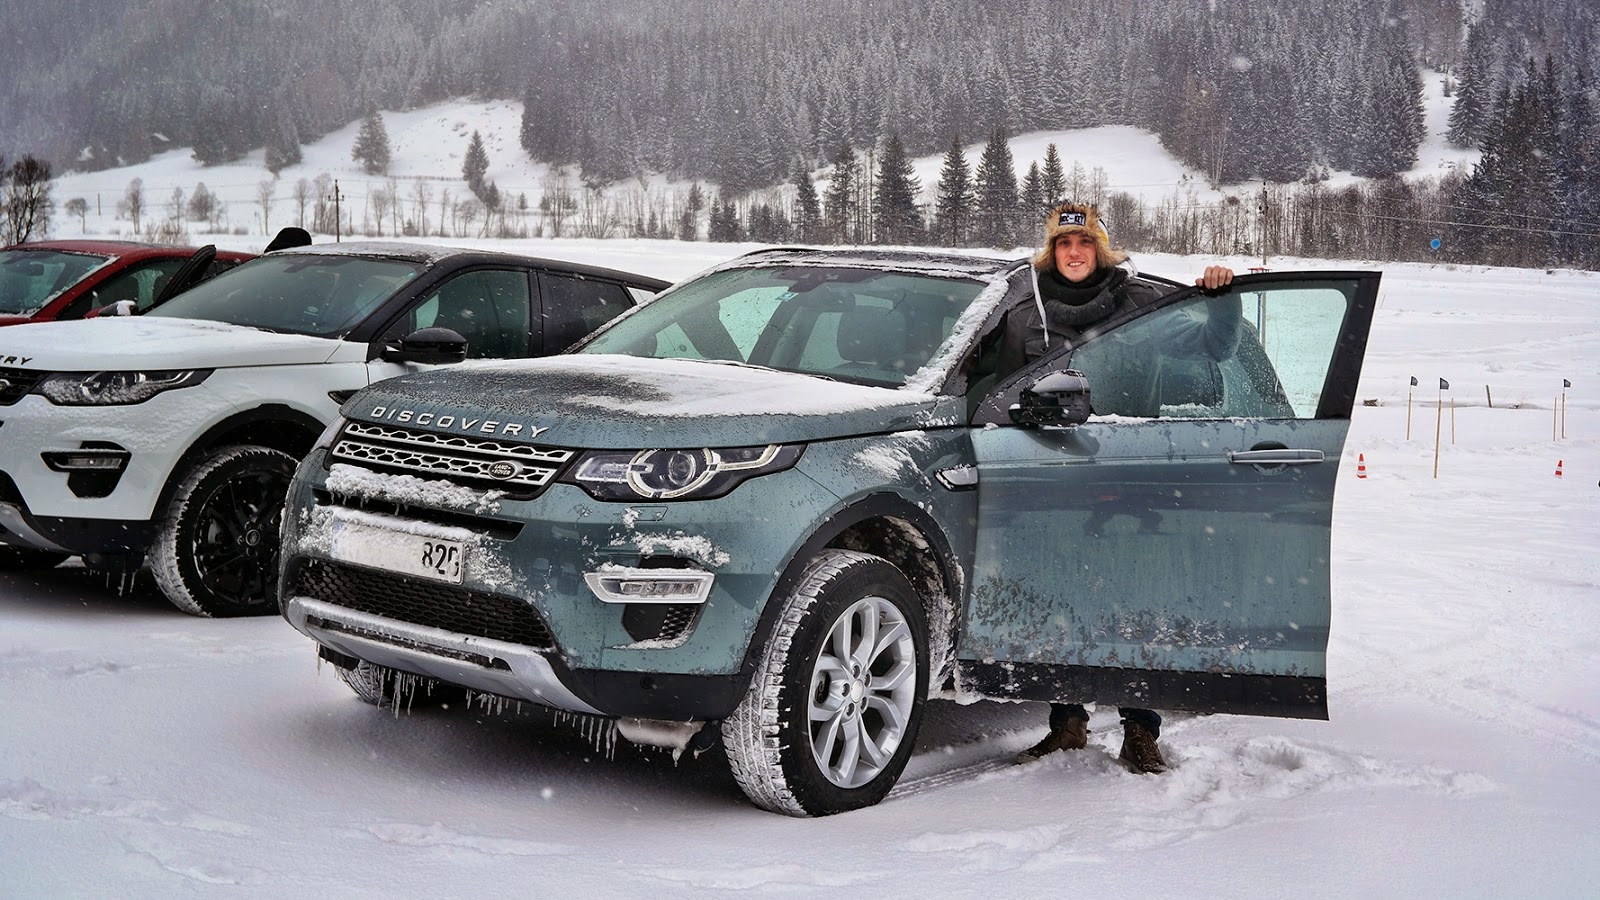 Gerhard mit dem 2015er Land Rover Discovery Sport | Photo © Jan Fischer/vanishingpoint.at